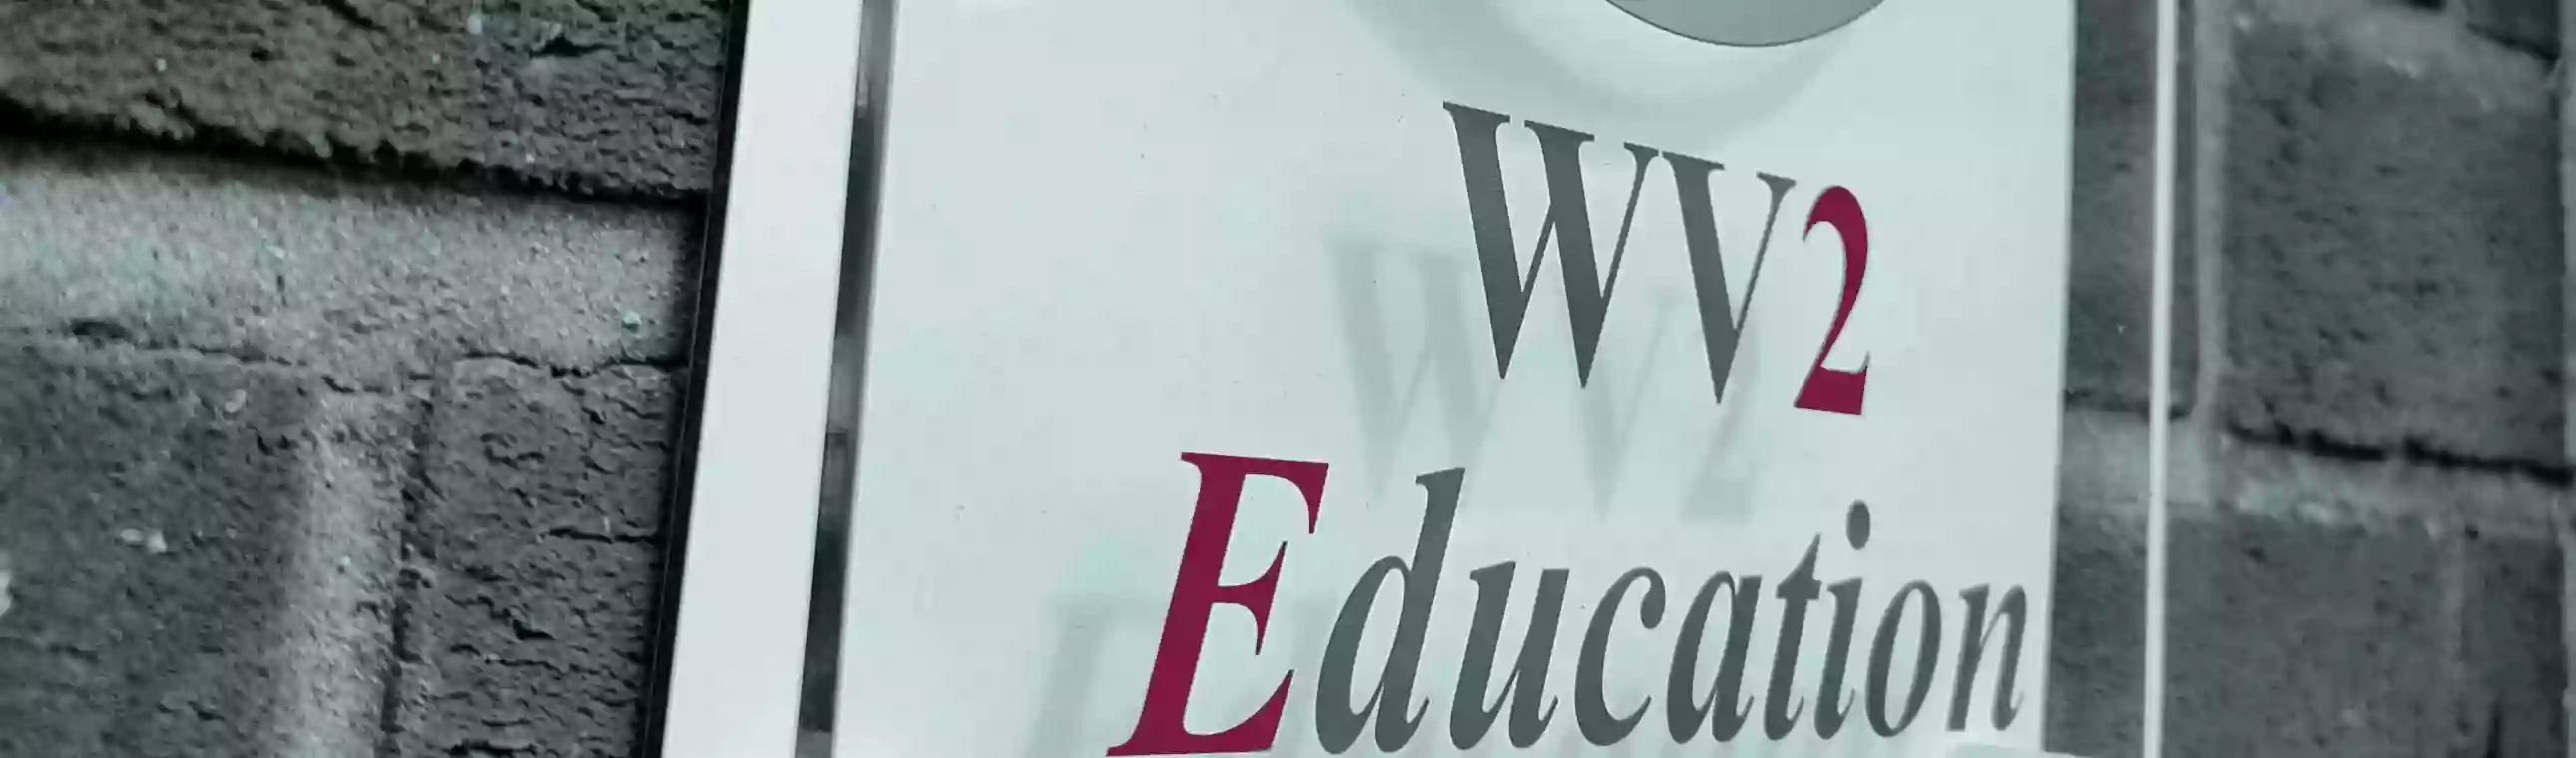 WV2 Education